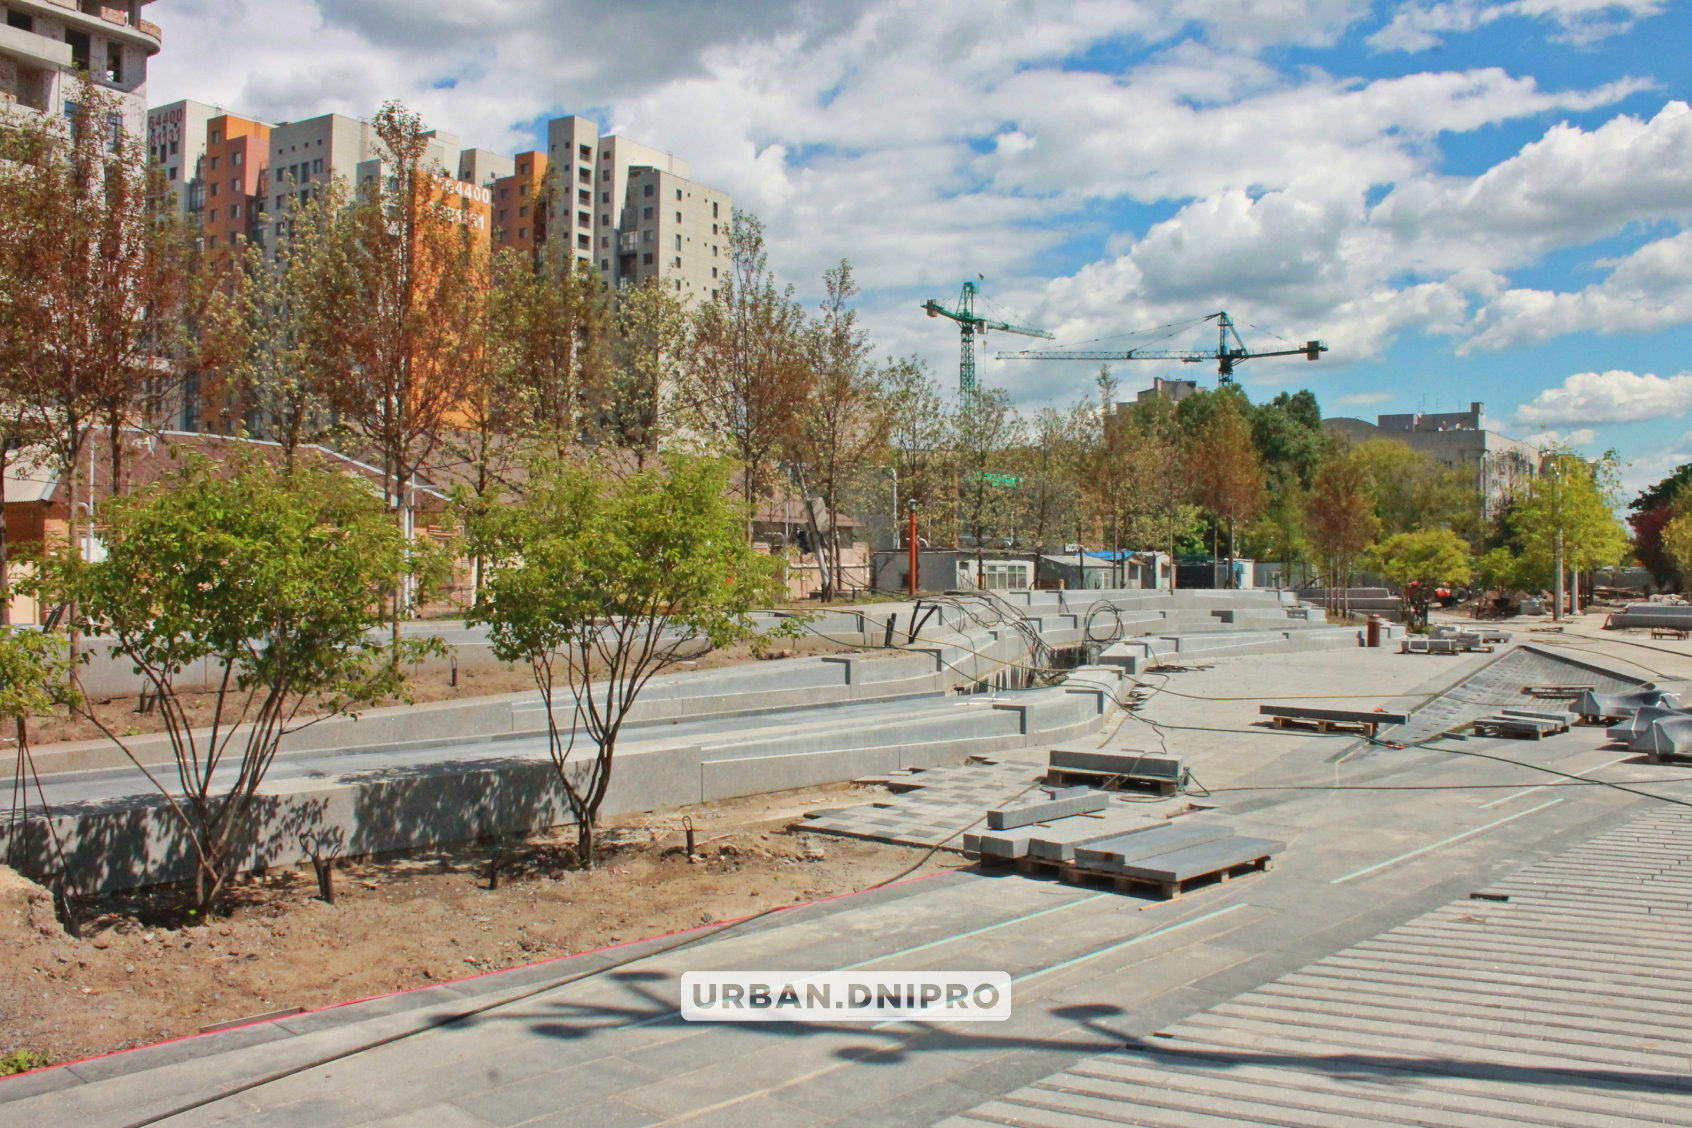 Новости Днепра про Скалодром и много деревьев: что будет на реконструированной Успенской площади в Днепре